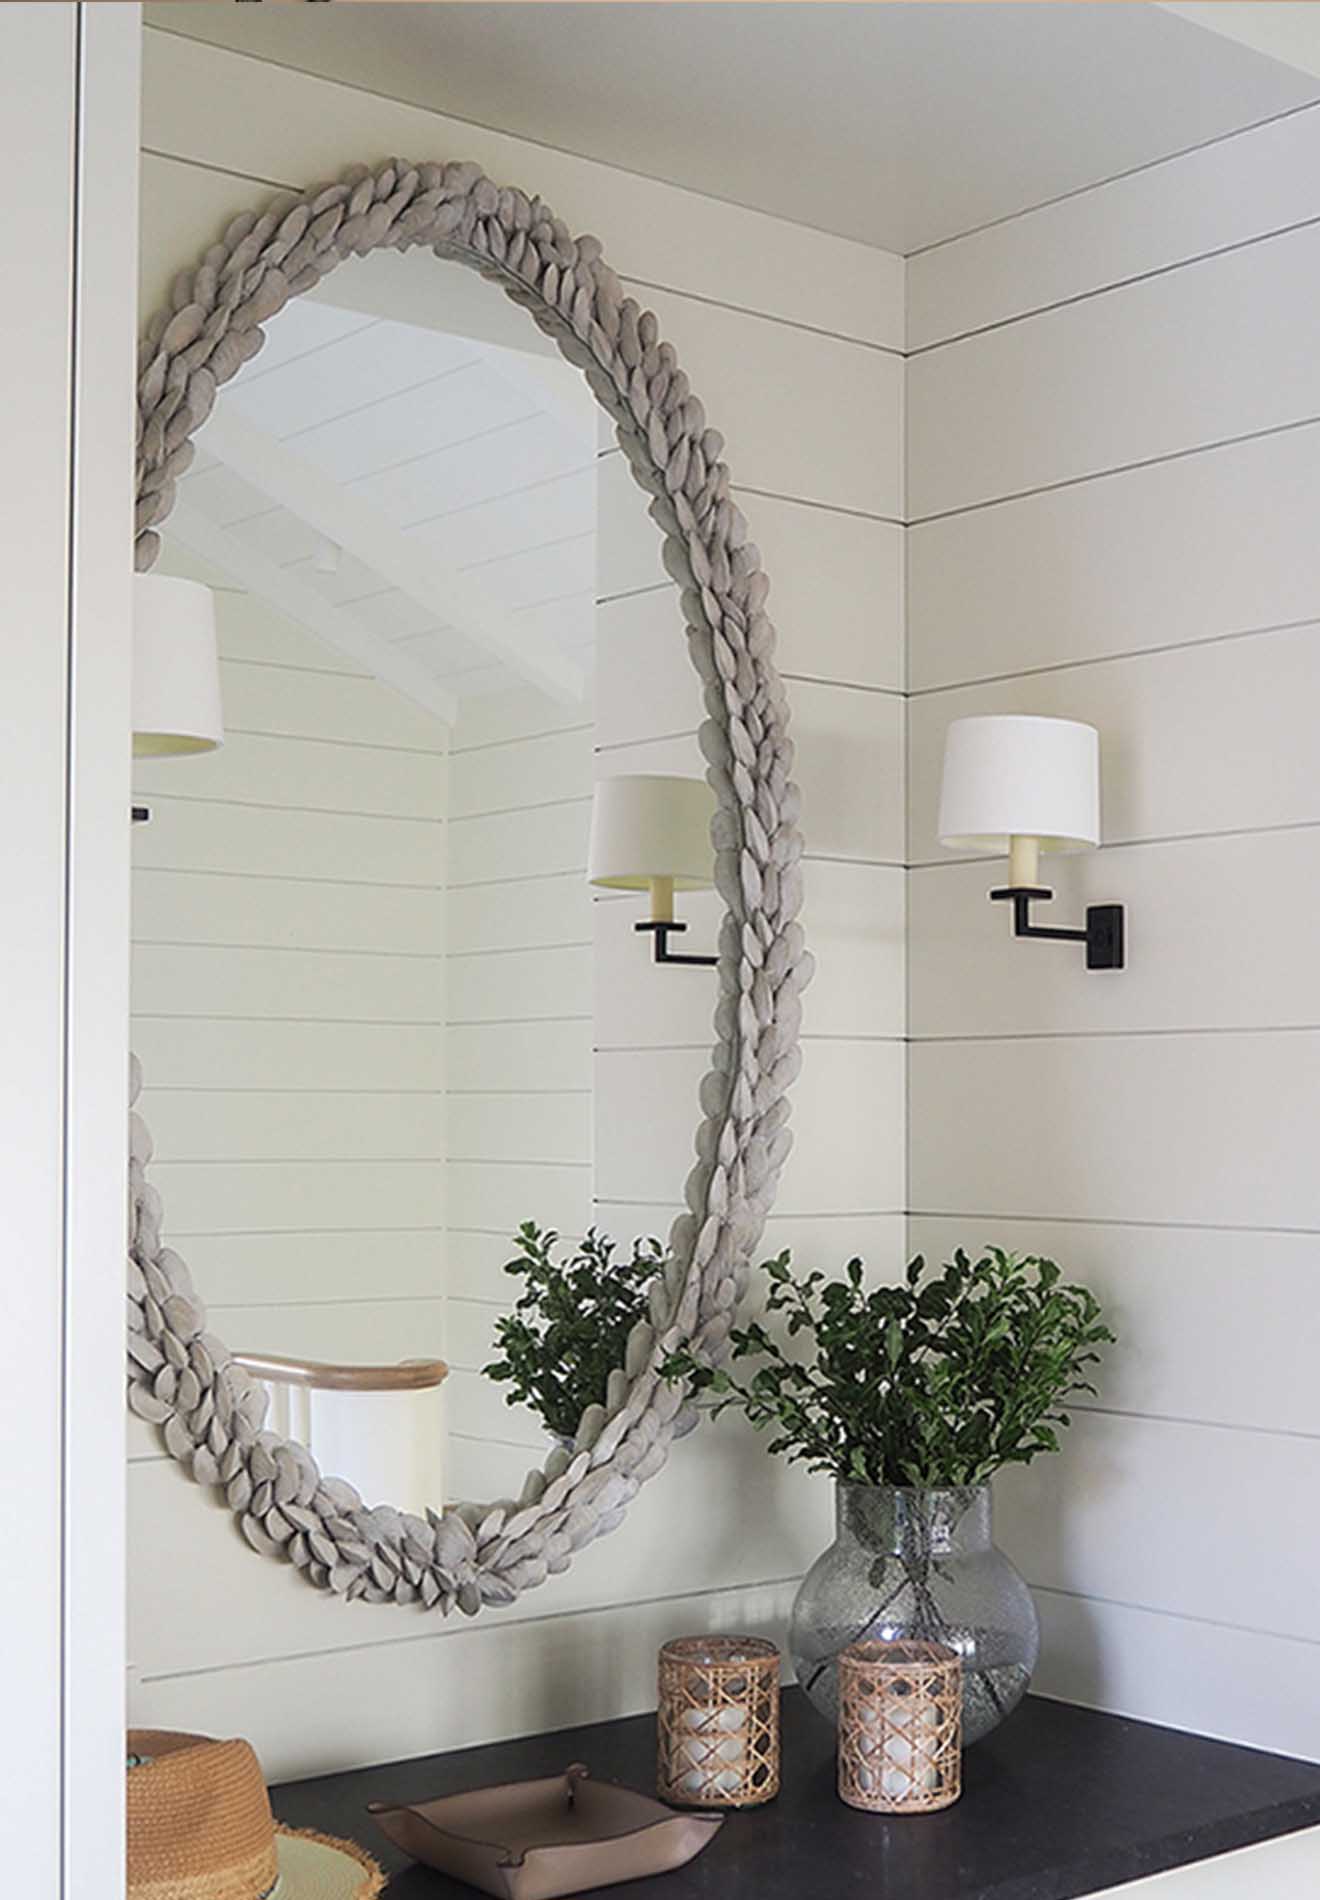 Porta Romana Mussel Shell mirror featured in Divine Design Oslo Interior Architecture | Photography by Studio C